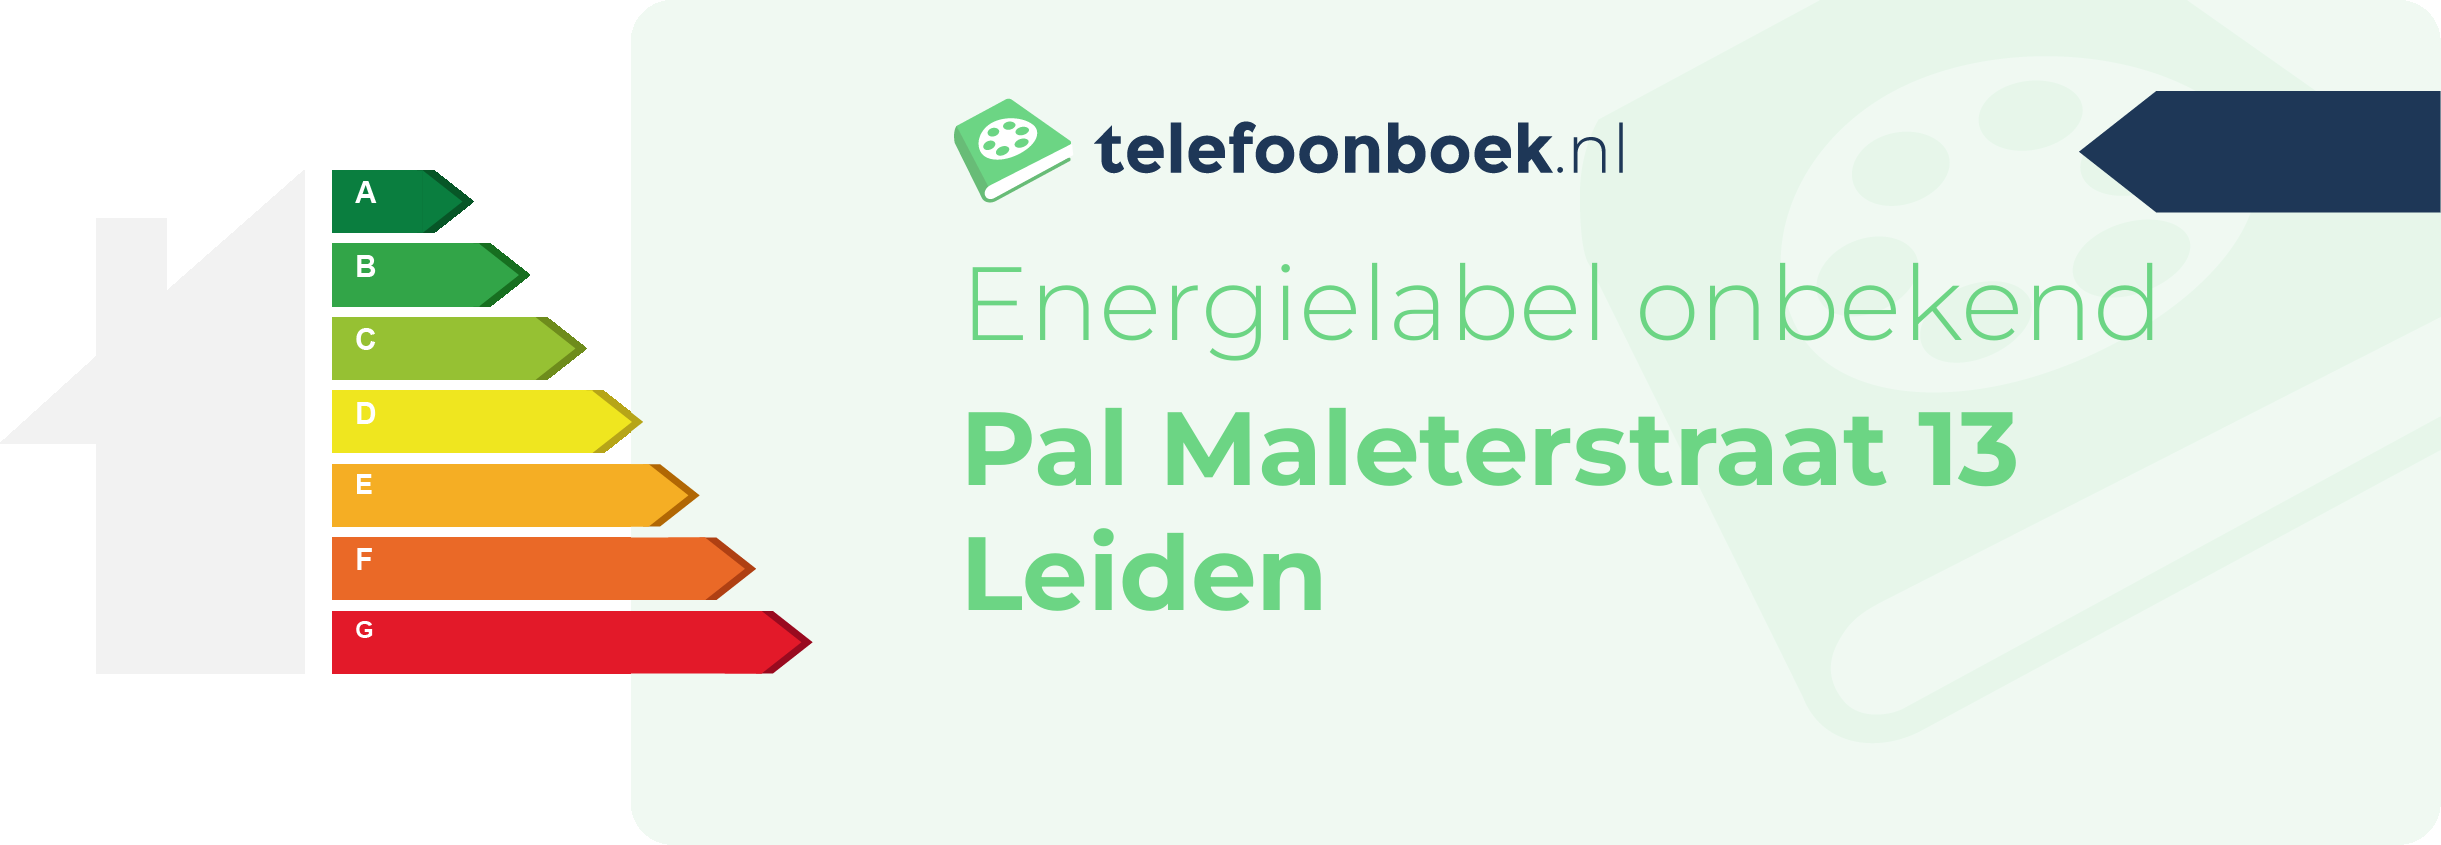 Energielabel Pal Maleterstraat 13 Leiden